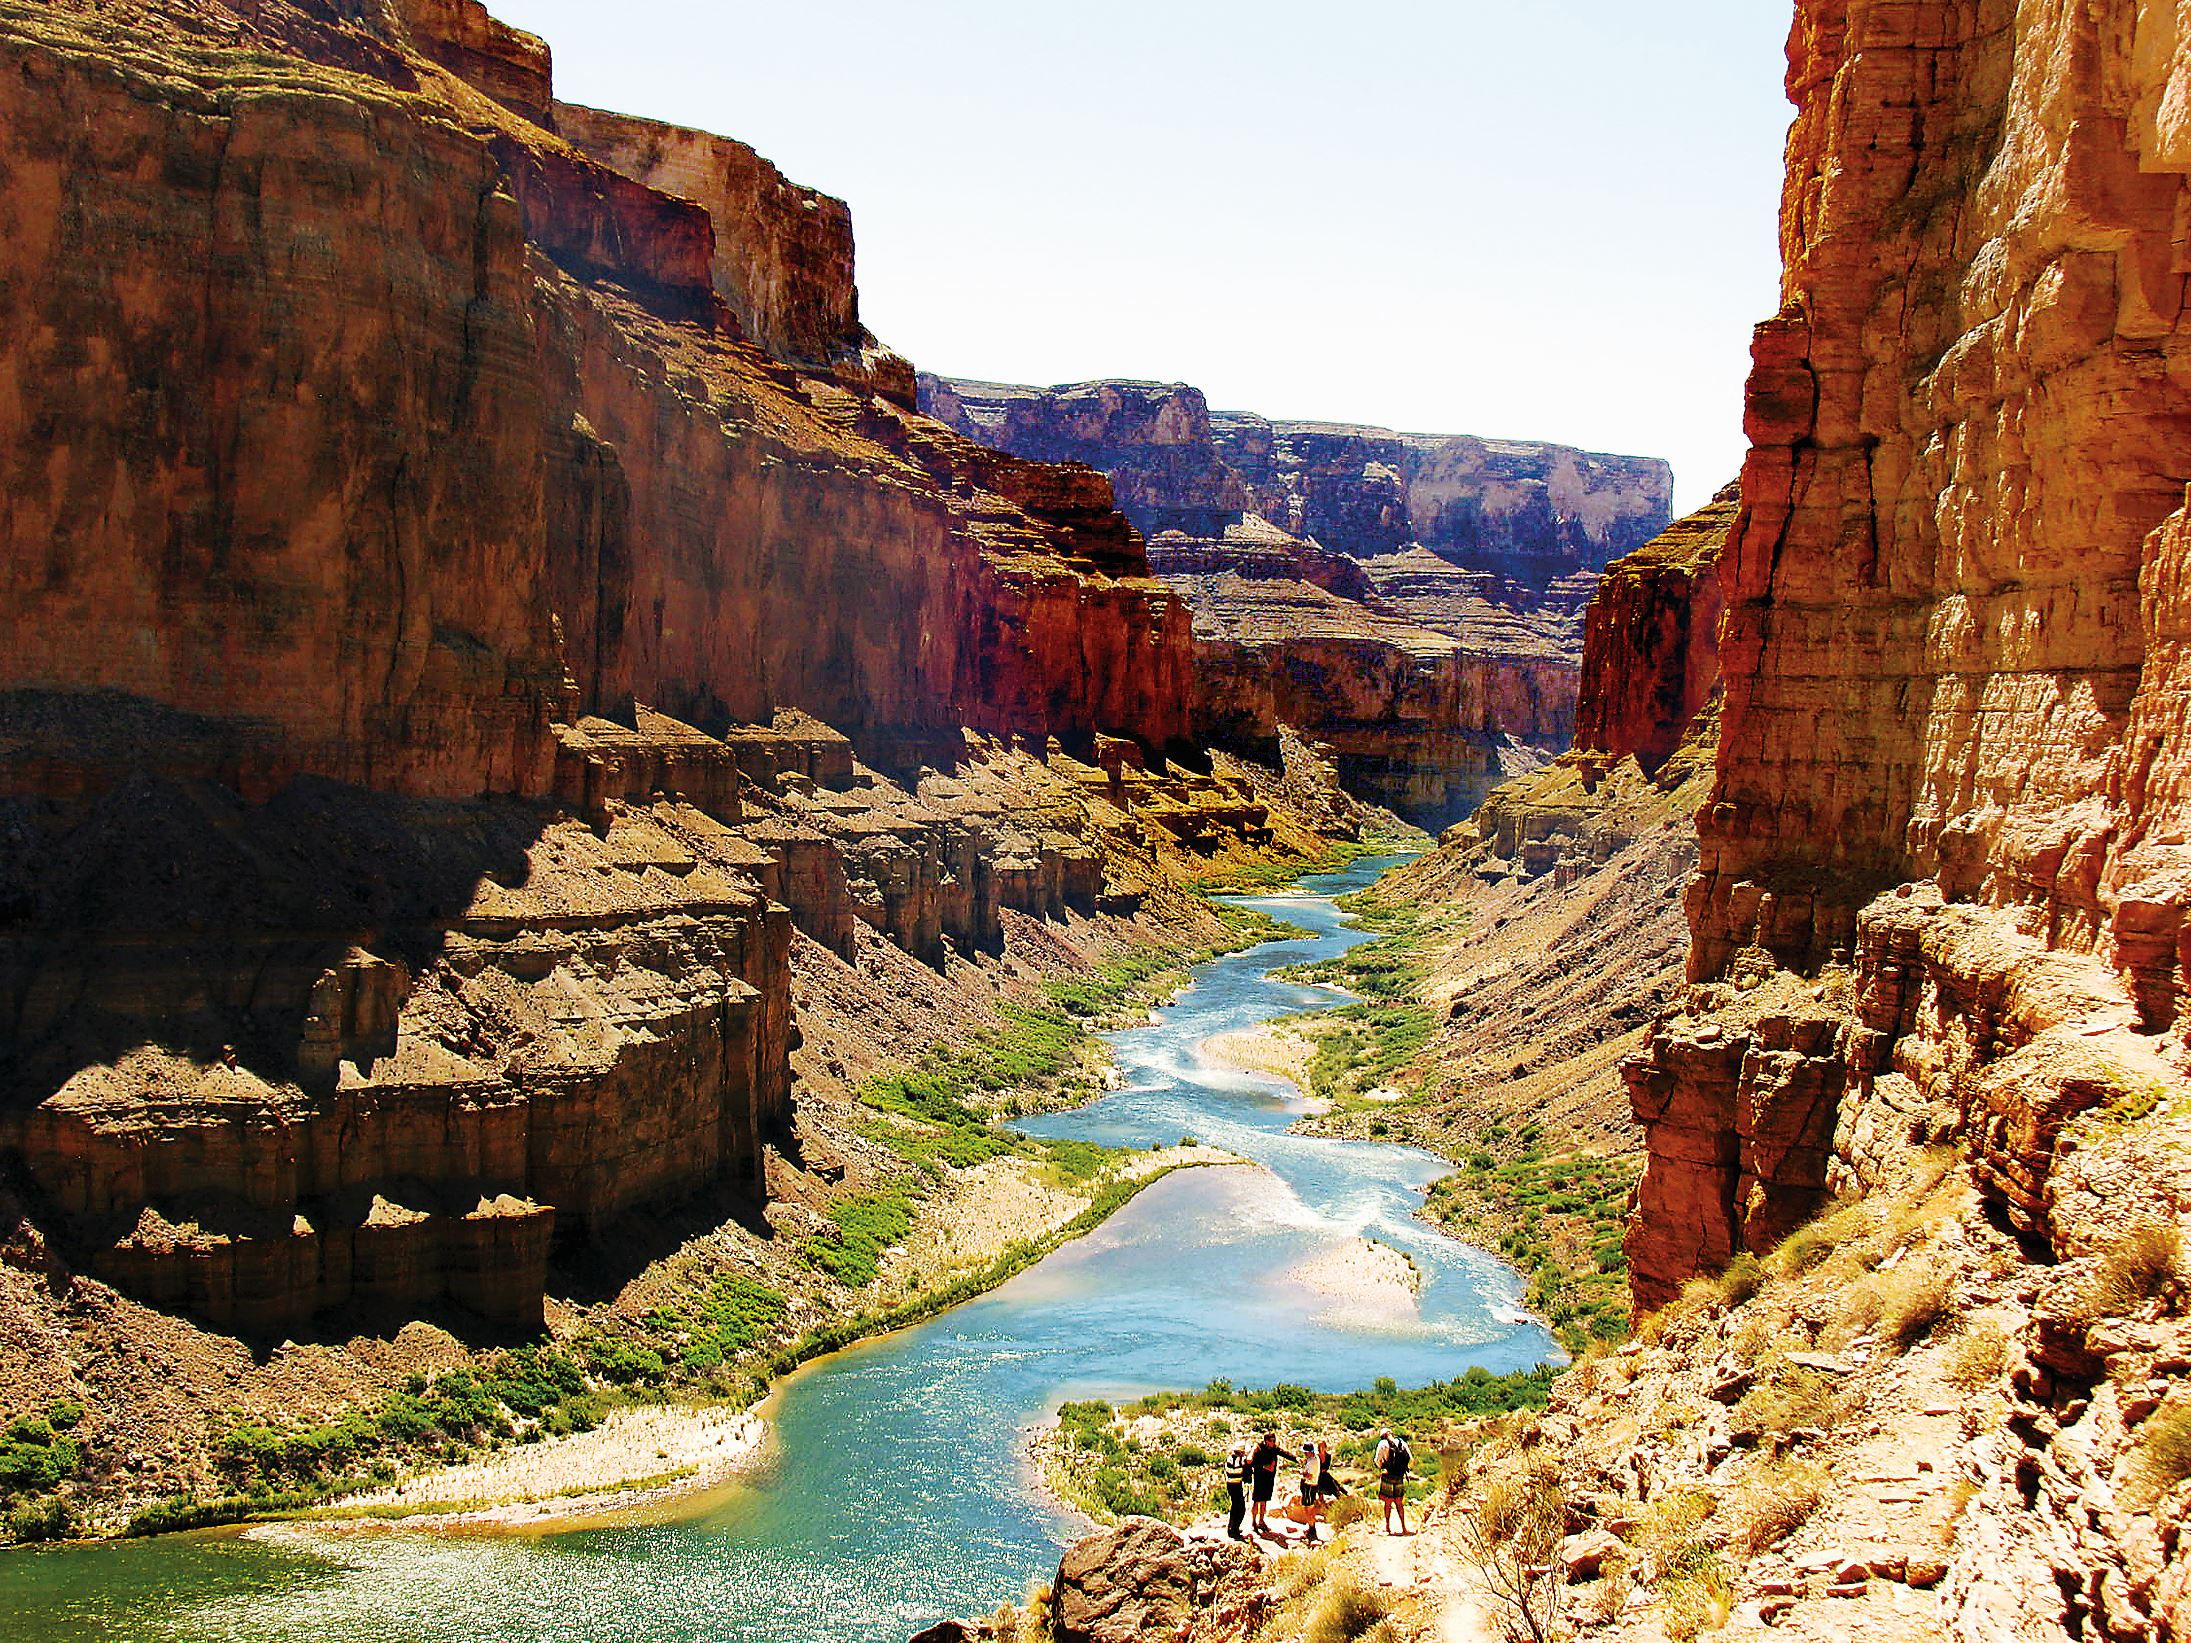 The-Colorado-River-through-Grand-Canyon-National-Park